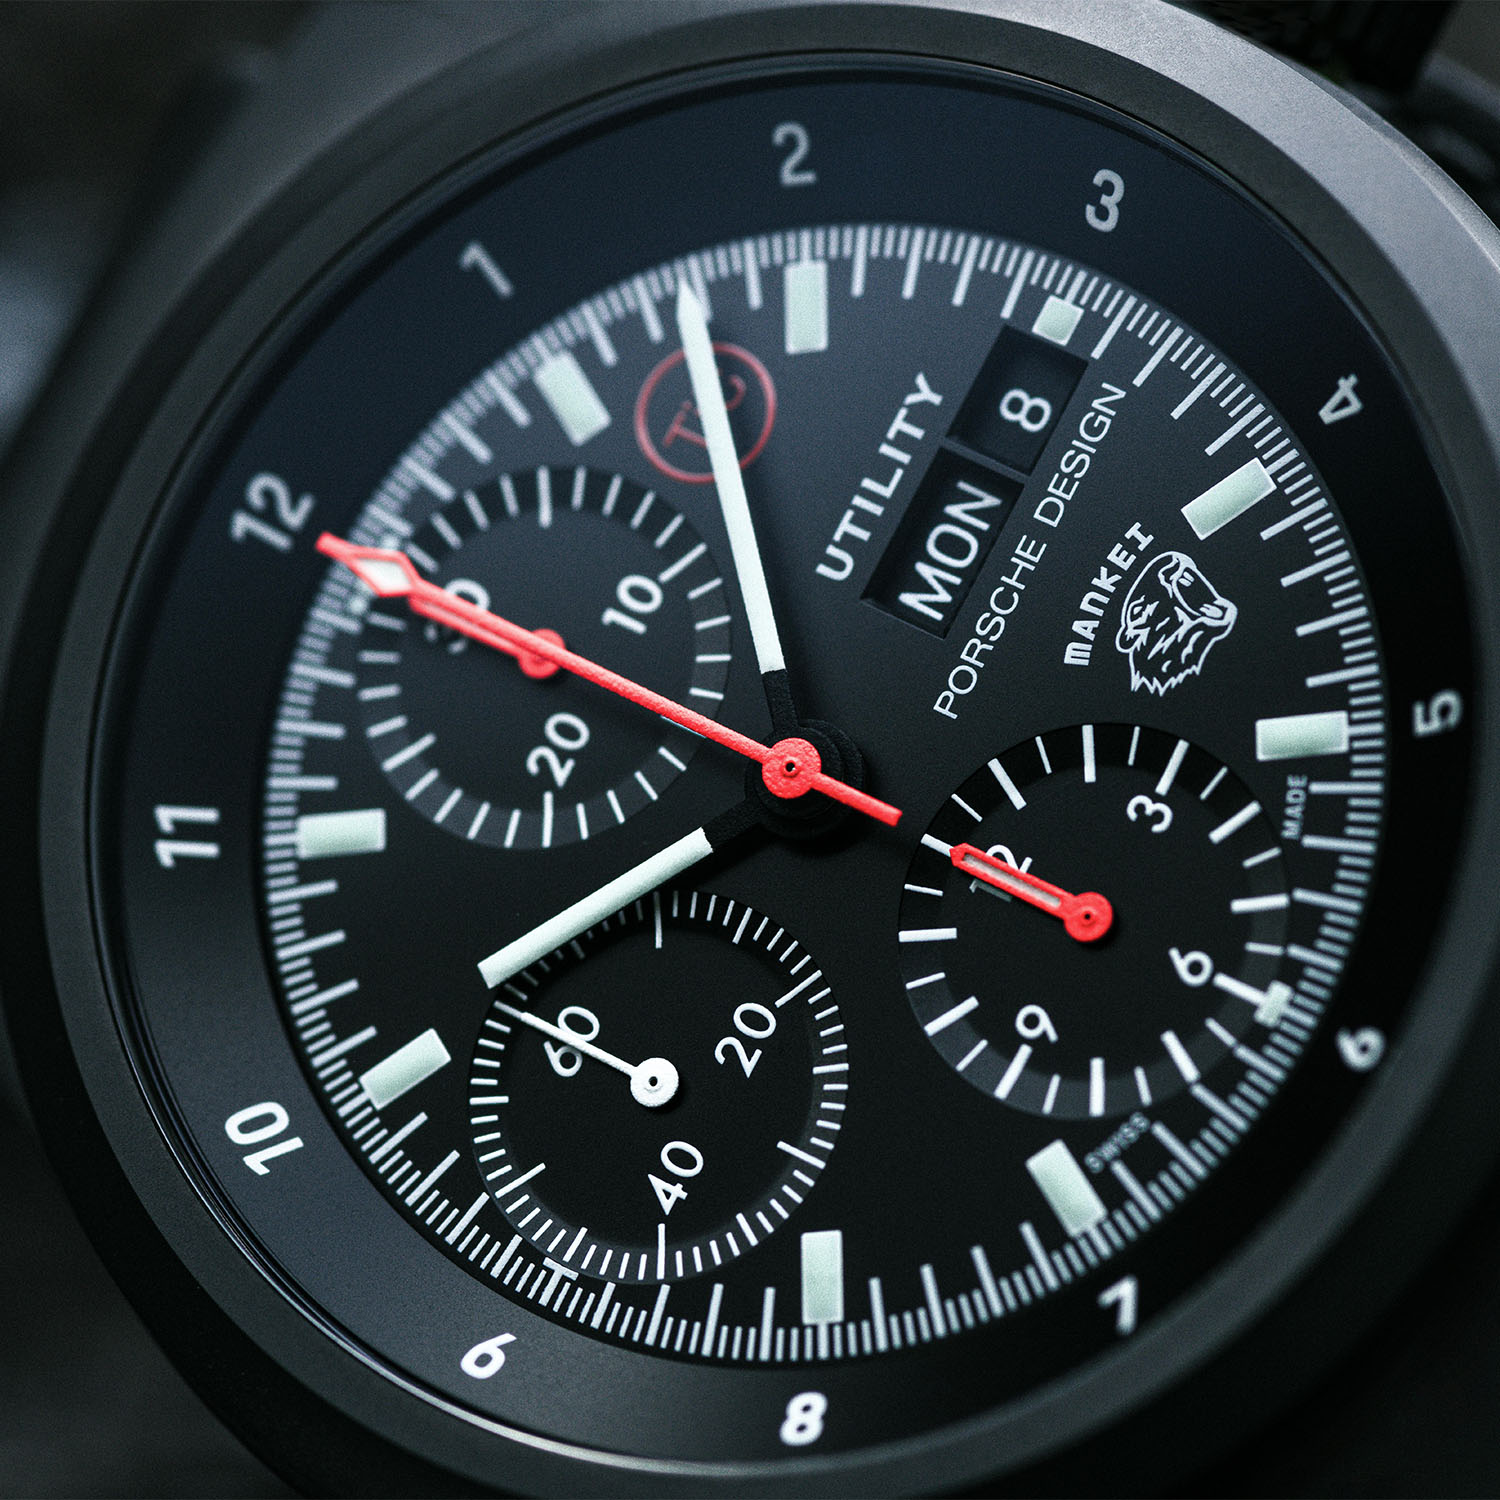 Представляем хронограф Porsche Design Chronograph 1 Utility, выполненный в военном стиле